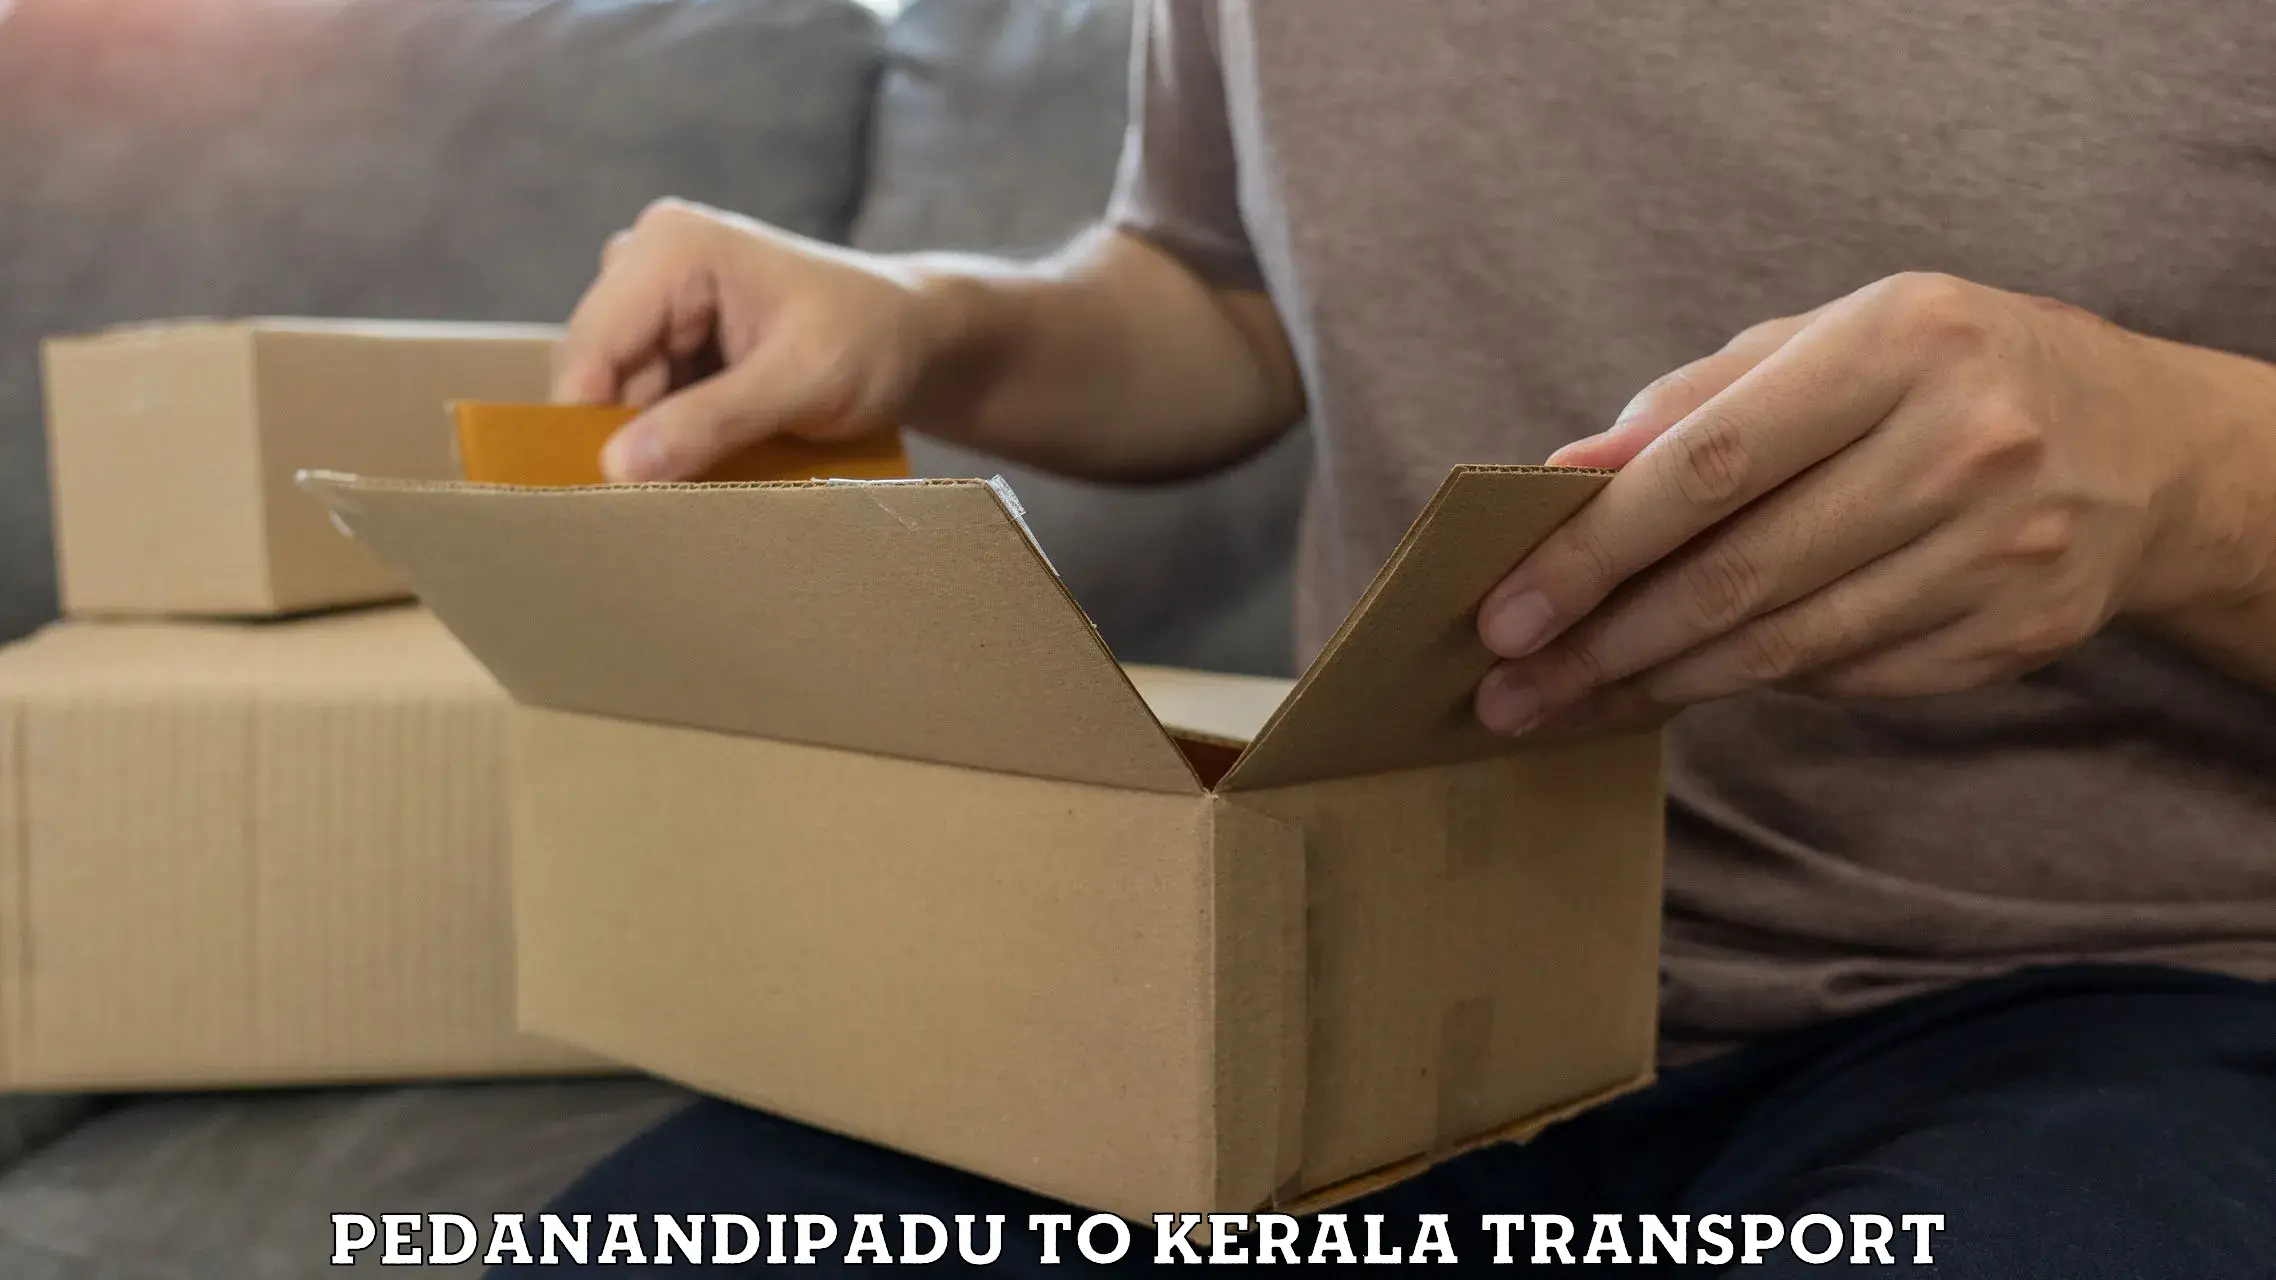 Nationwide transport services Pedanandipadu to Munnar